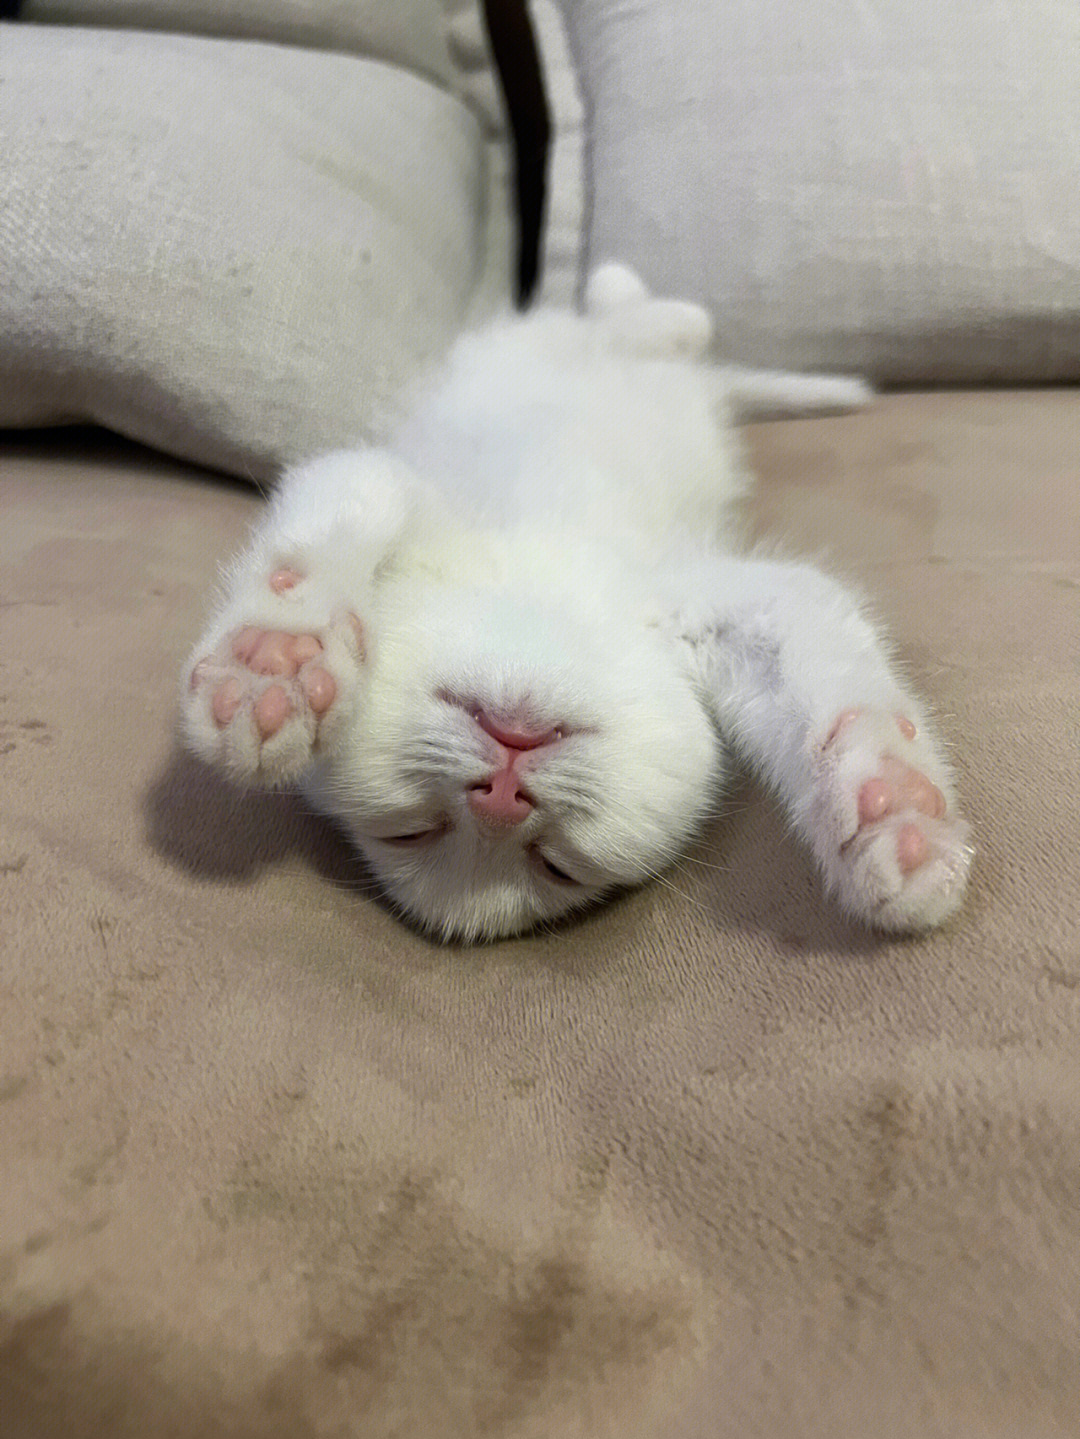 小猫睡觉的样子图片